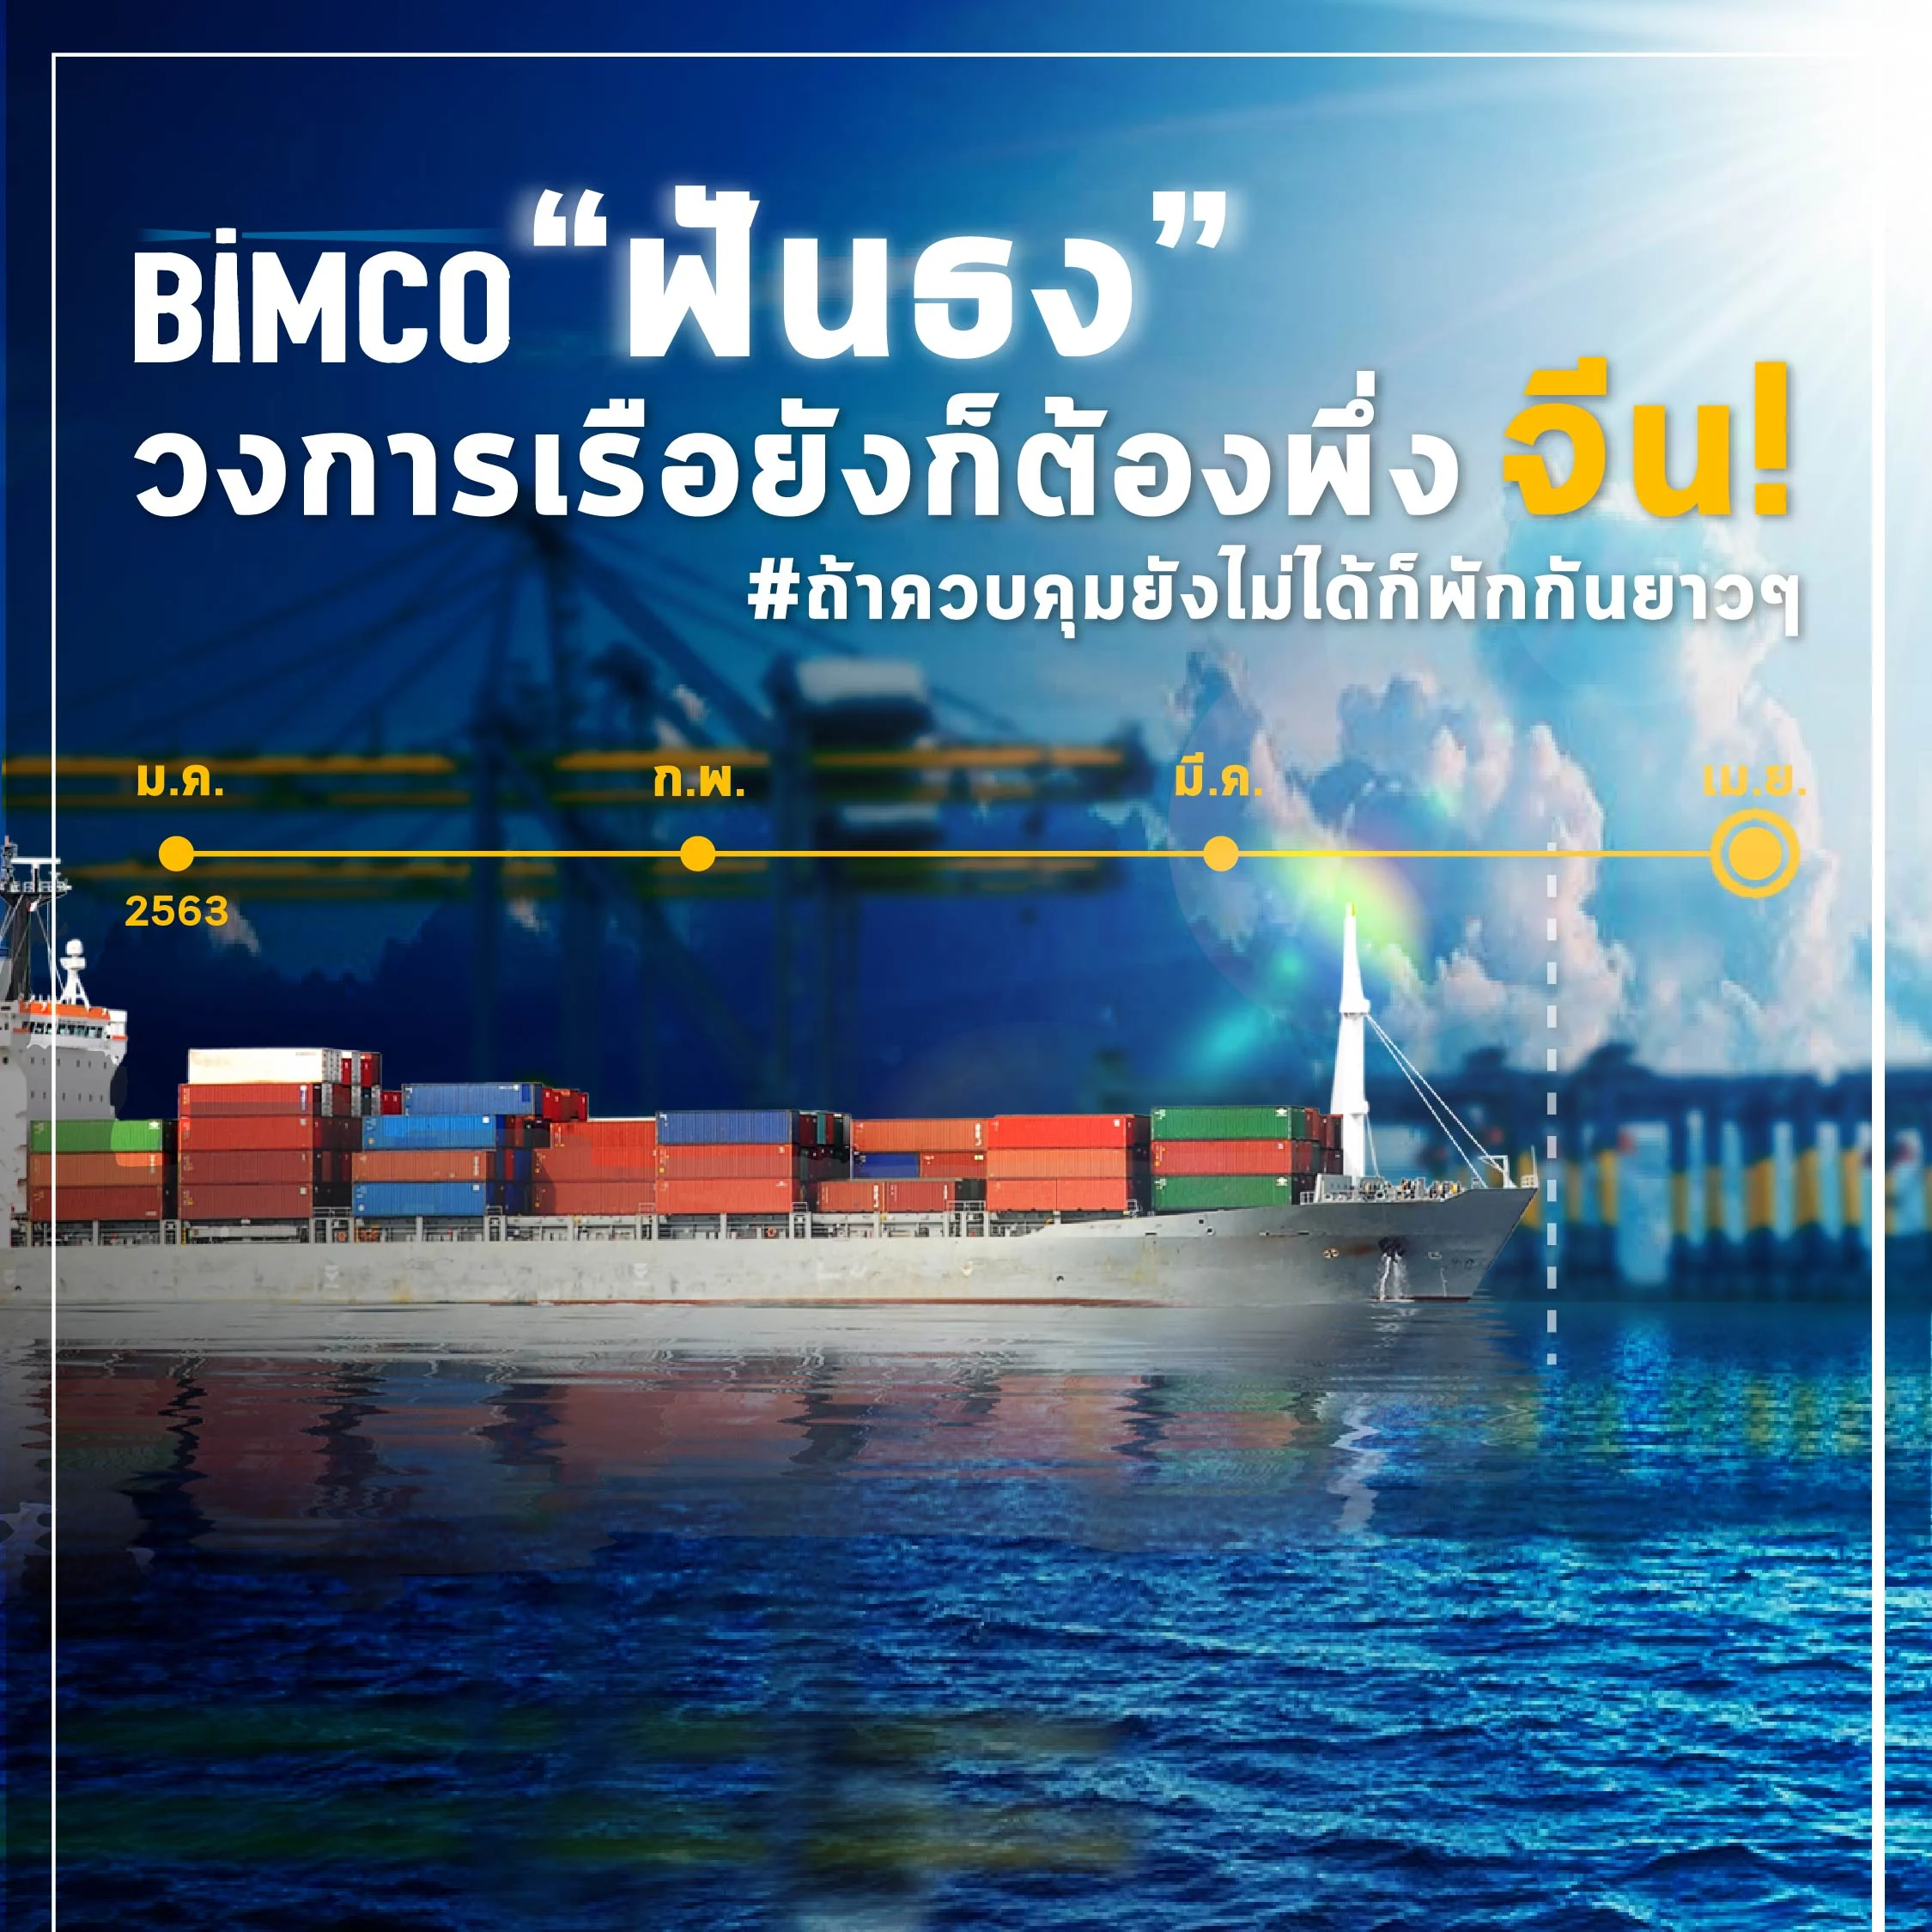 BIMCO ฟันธงวงการเรือยังต้องพึ่งจีน